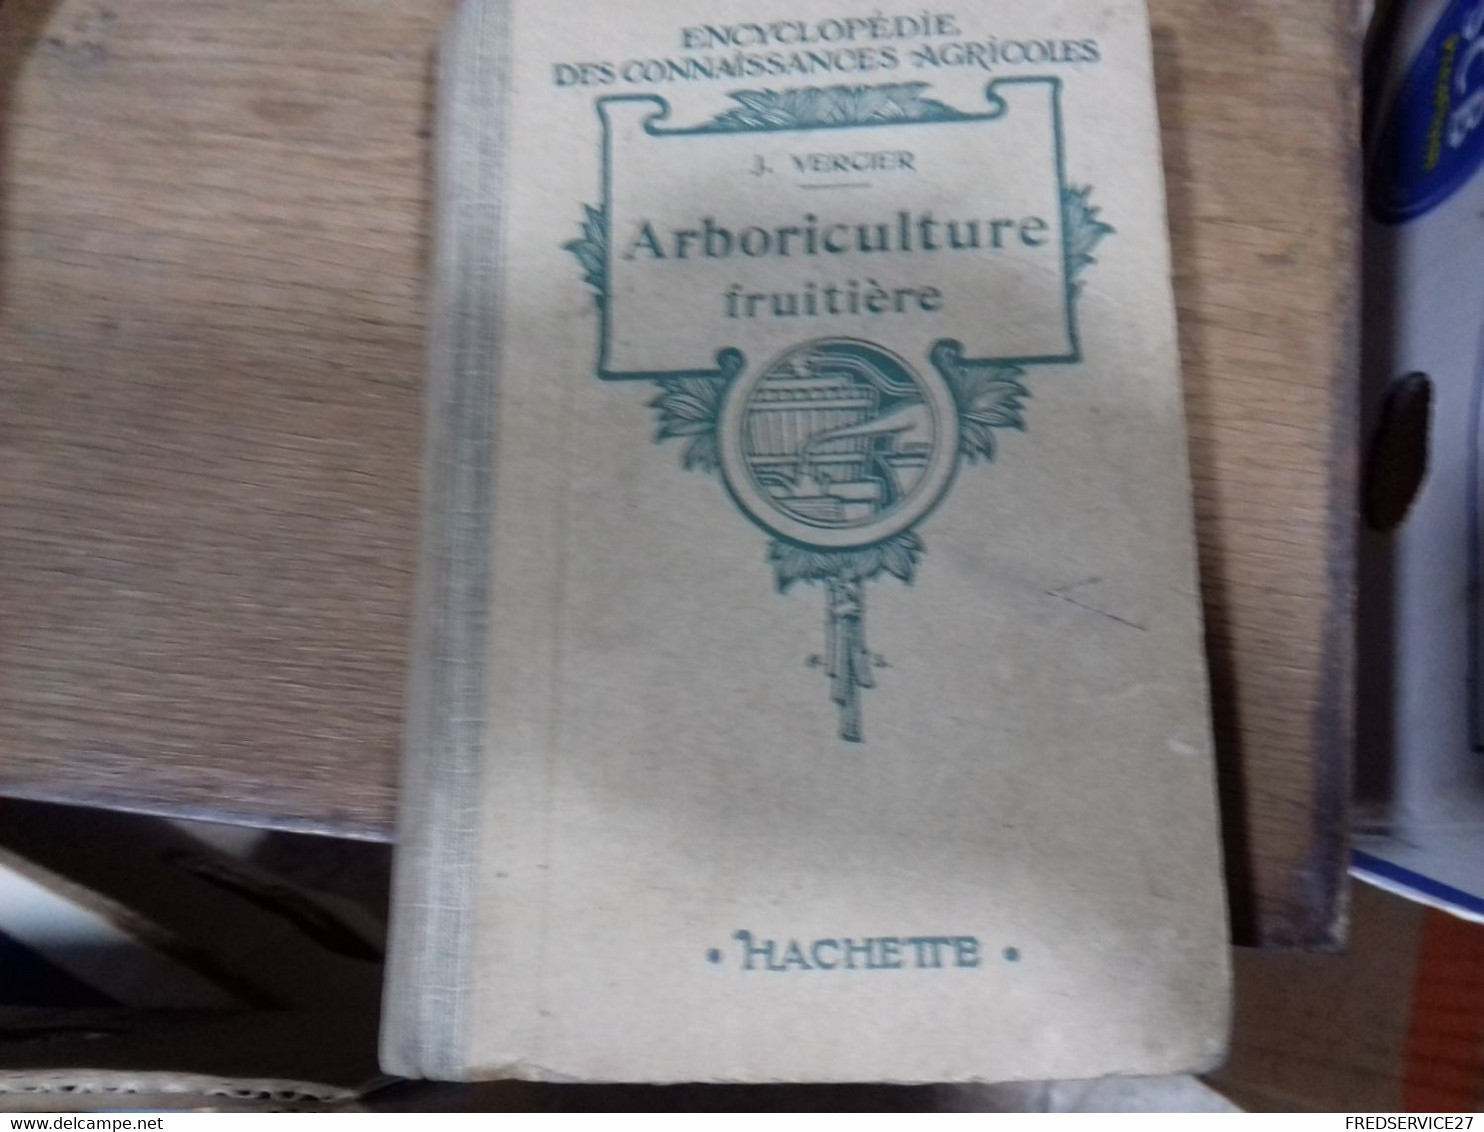 43  //   ENCYCLOPEDIE DES CONNAISSANCES AGRICOLES  ARBORICULTURE FRUITIERE    HACHETTE - Encyclopaedia